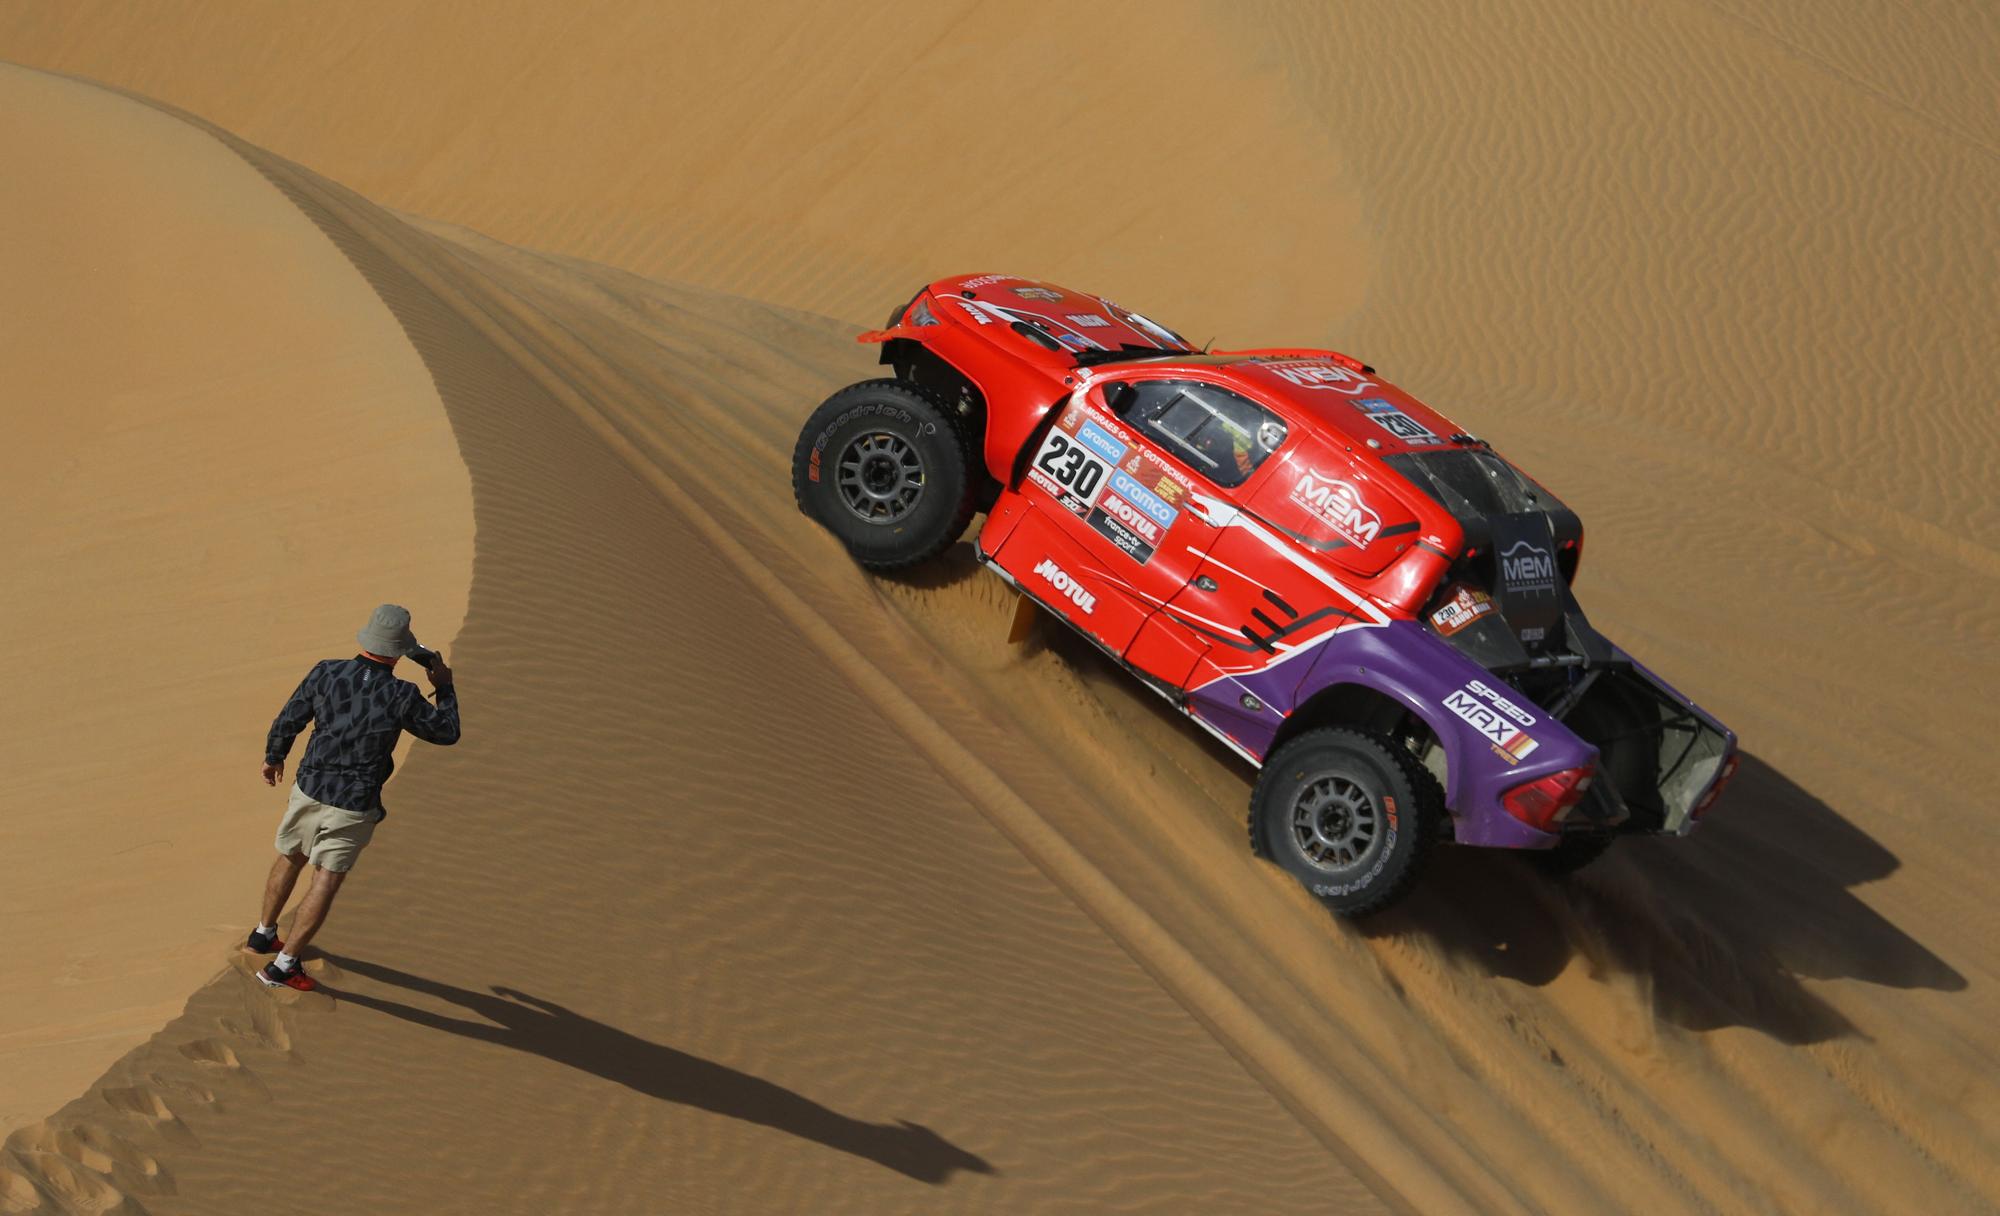 Dakar Rally (163661186).jpg